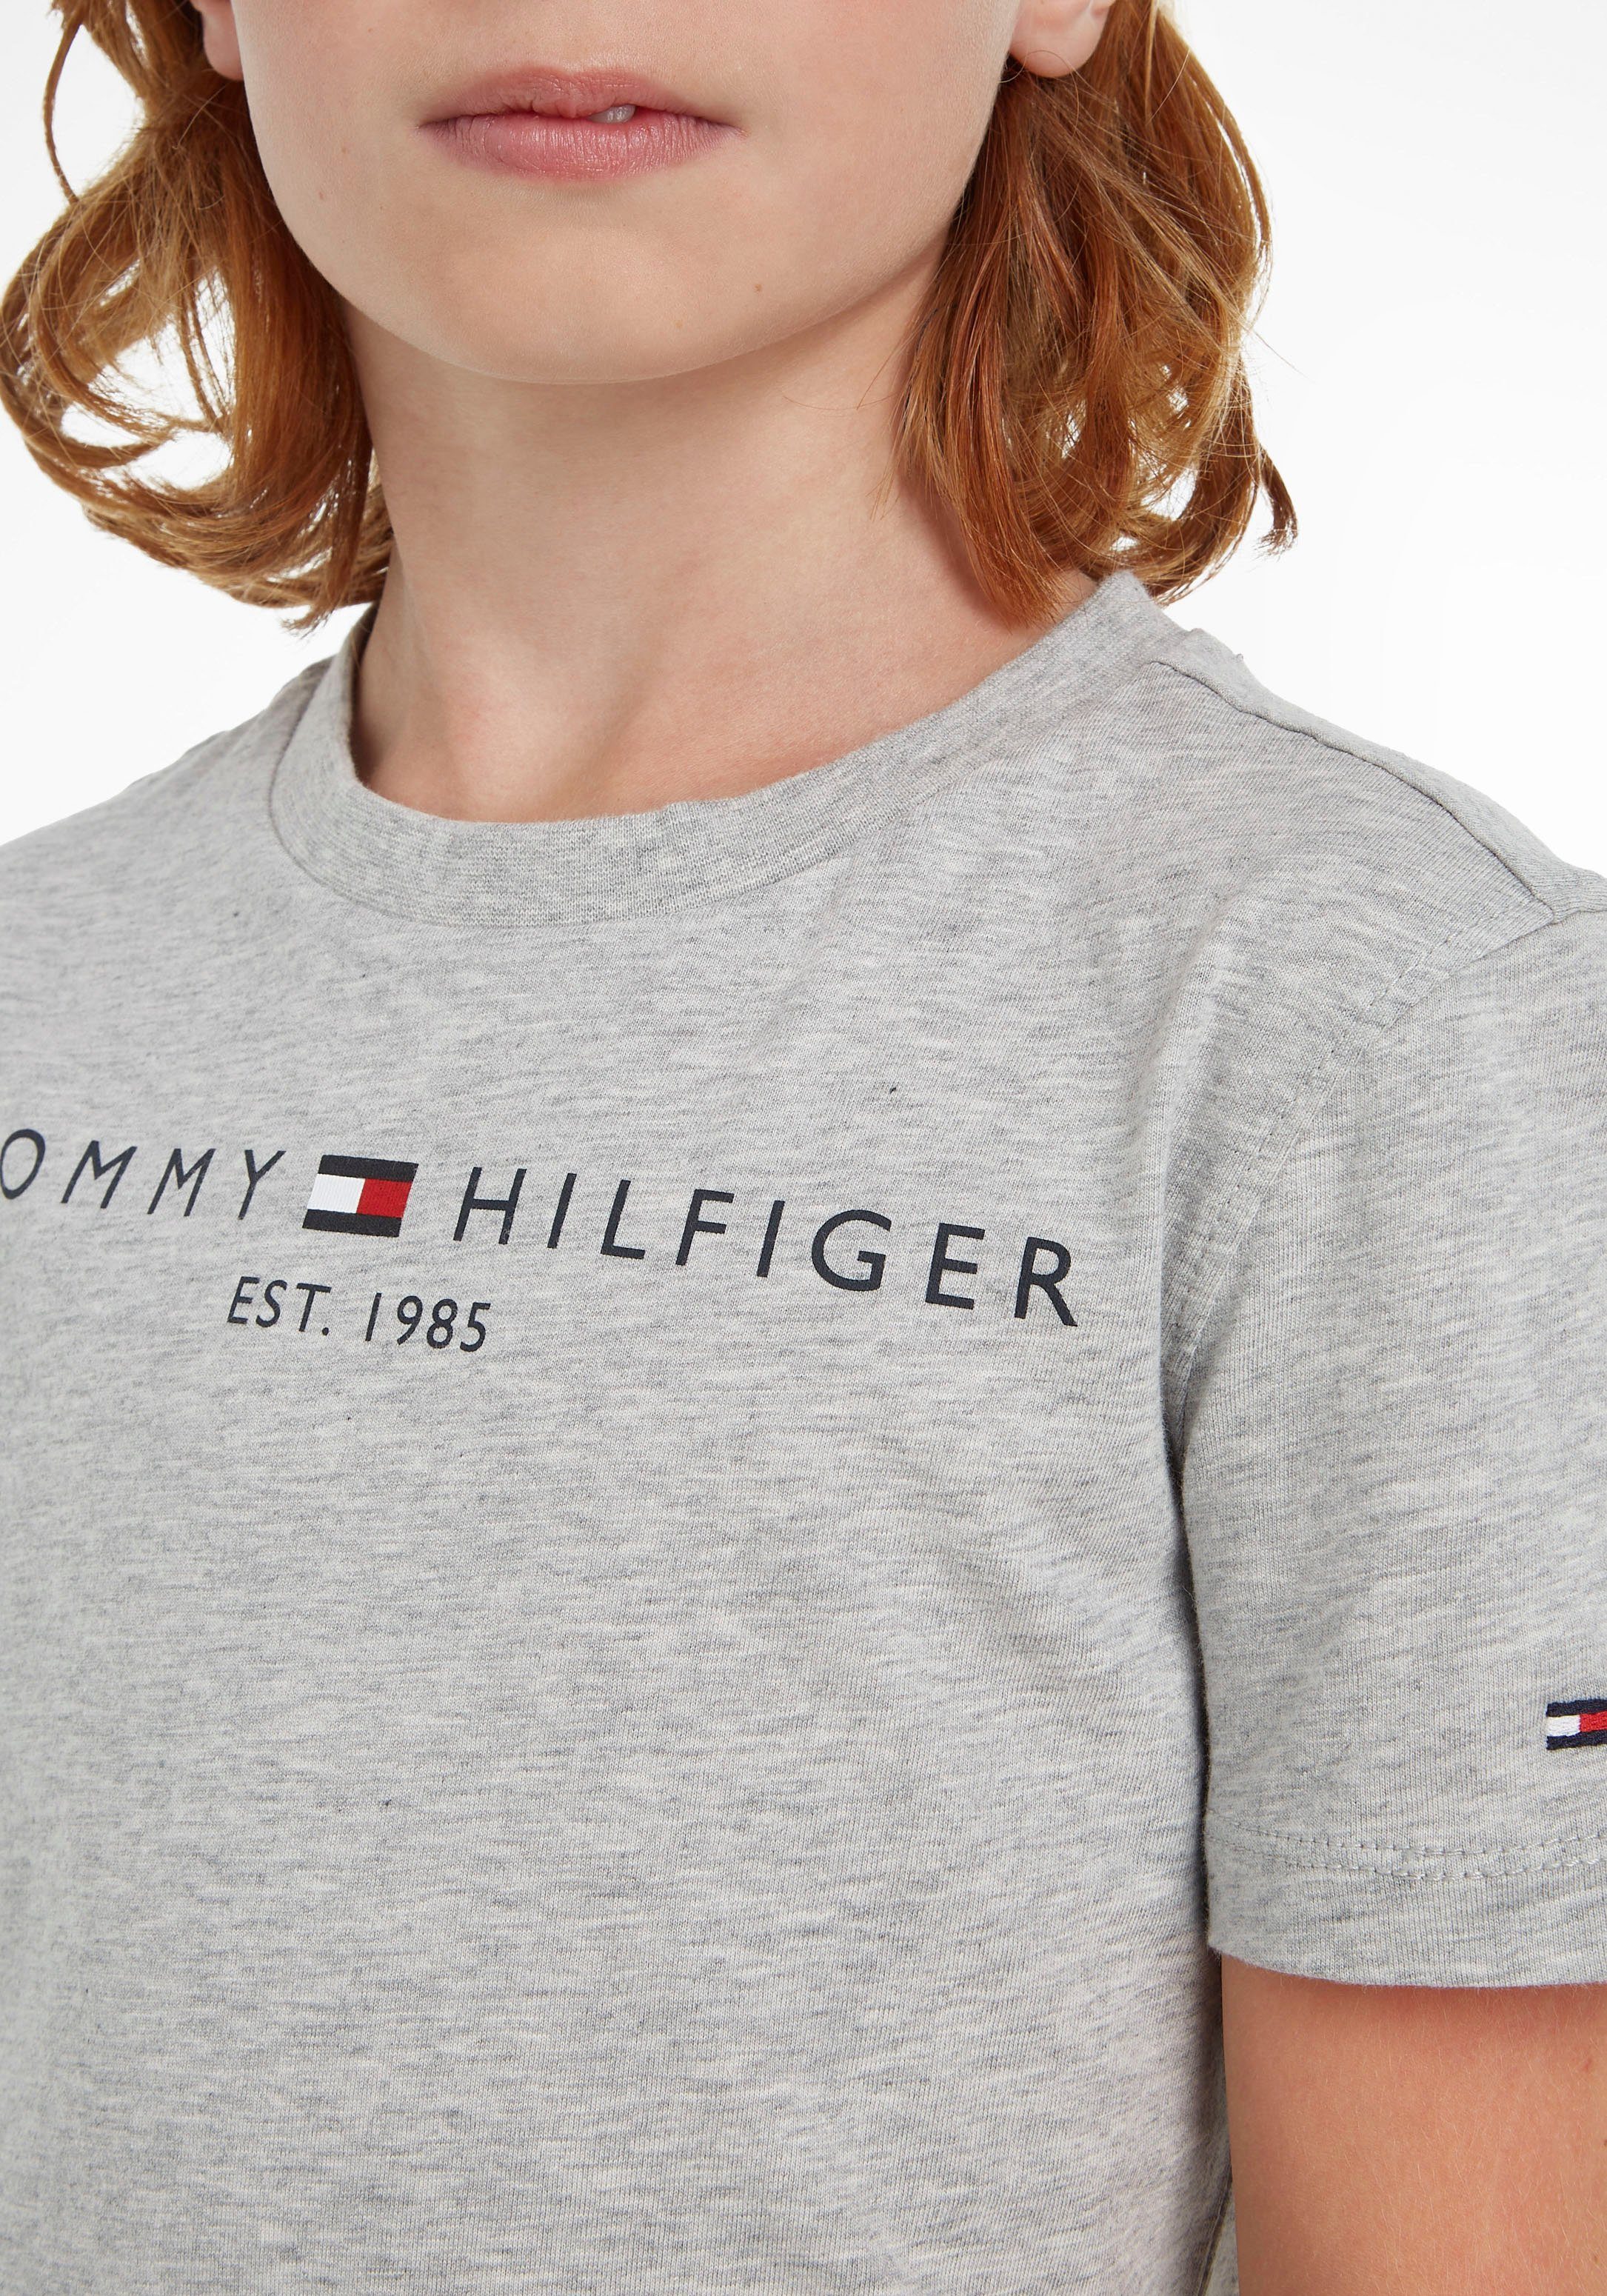 ESSENTIAL T-Shirt Jungen Tommy MiniMe,für Junior Hilfiger TEE Mädchen und Kids Kinder